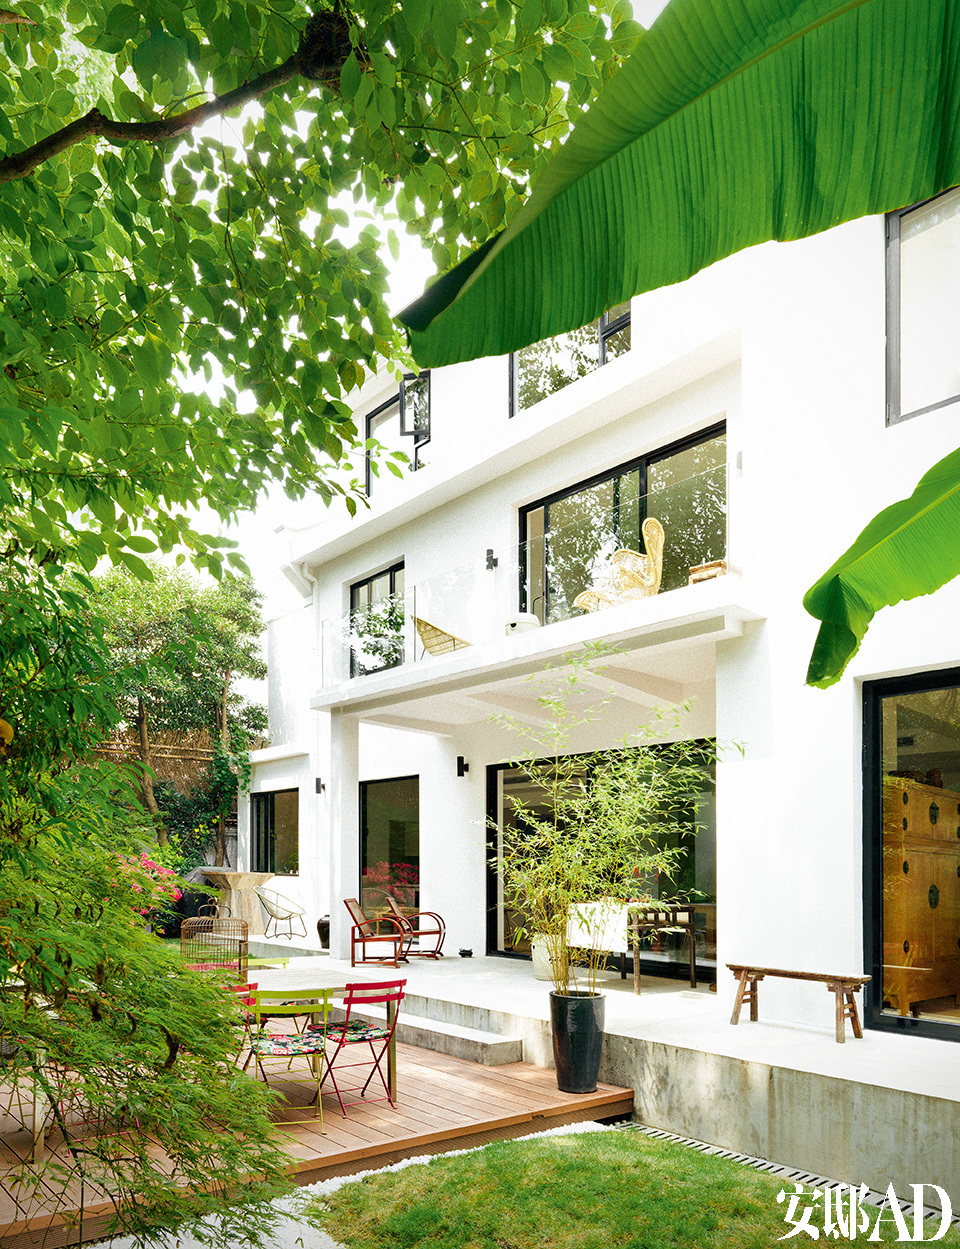 设计师MJ用各种规格的绿植打造出富有生机的院子。